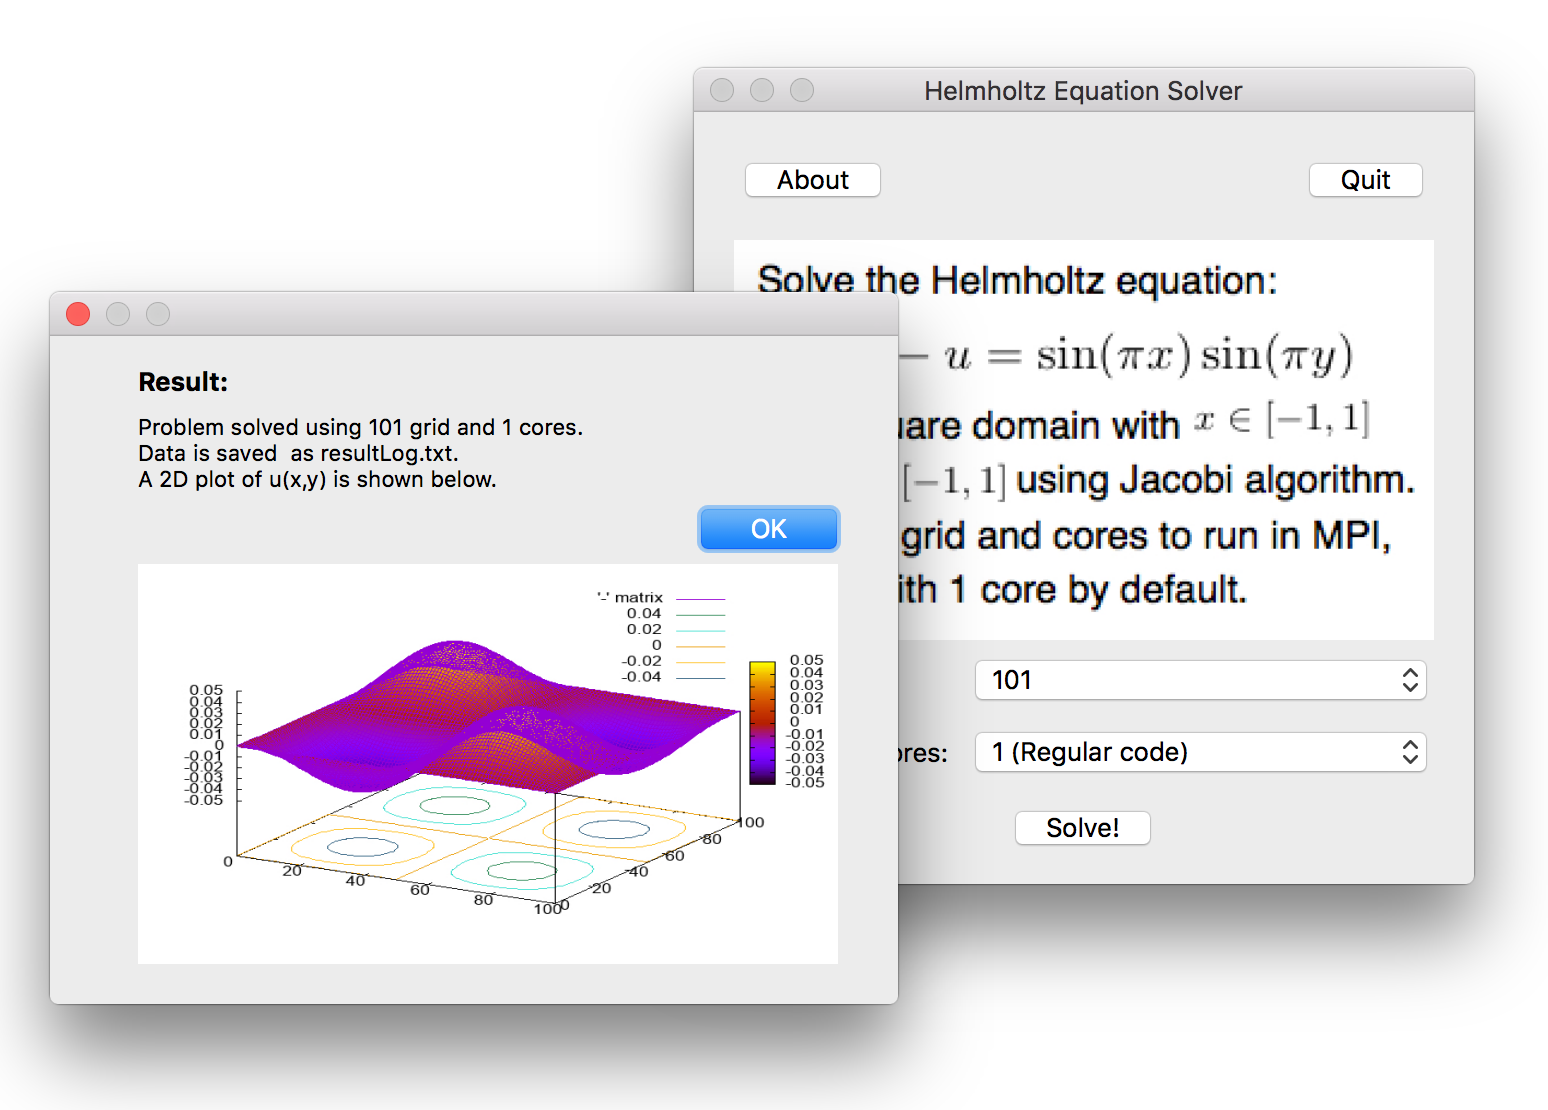 Helmholtz Equation Solver Result